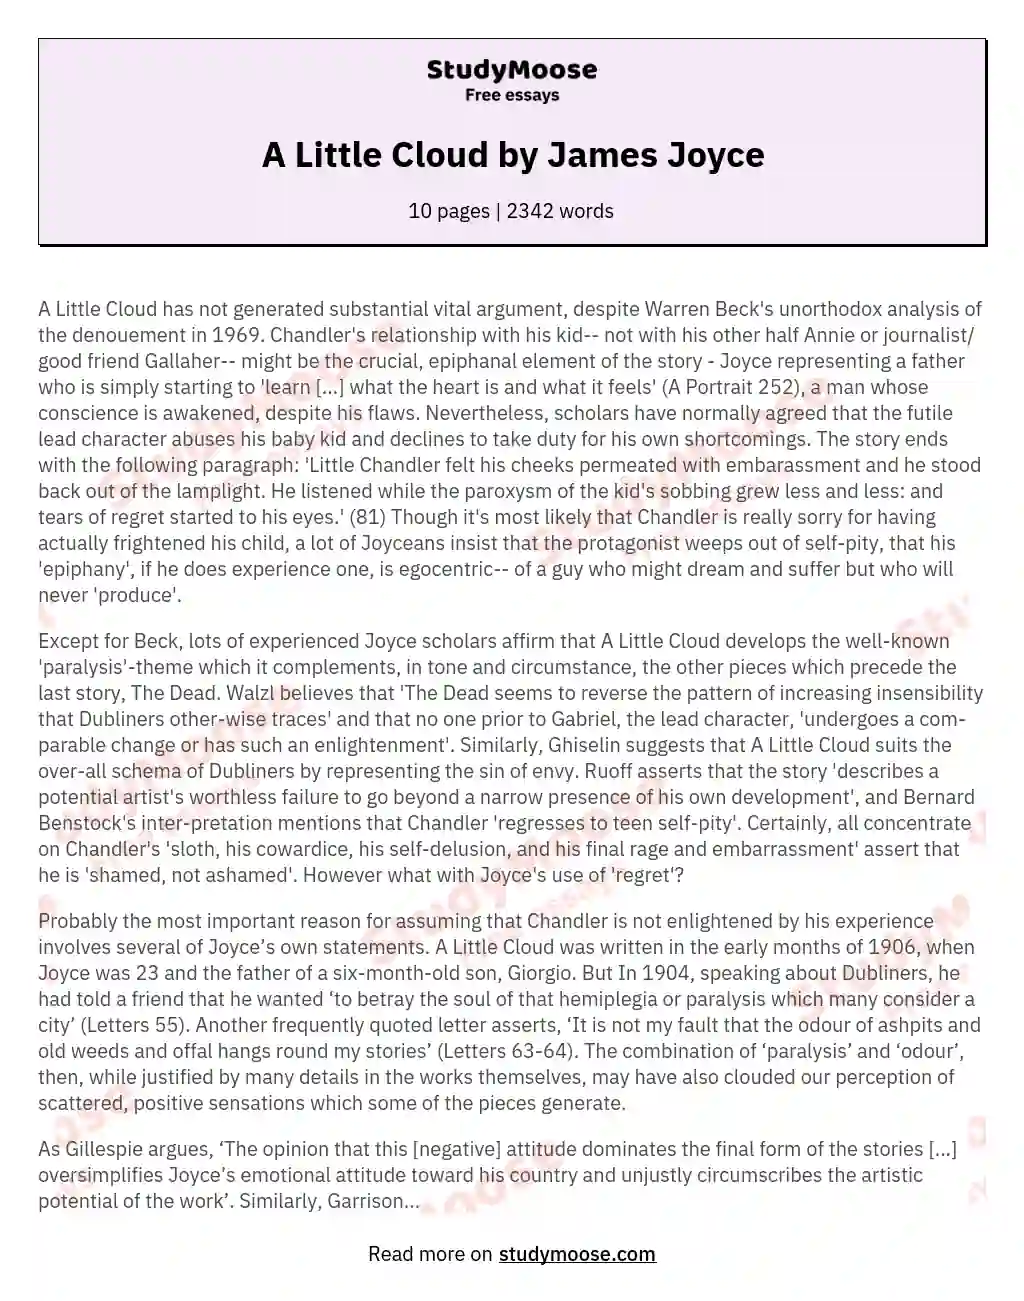 A Little Cloud by James Joyce essay